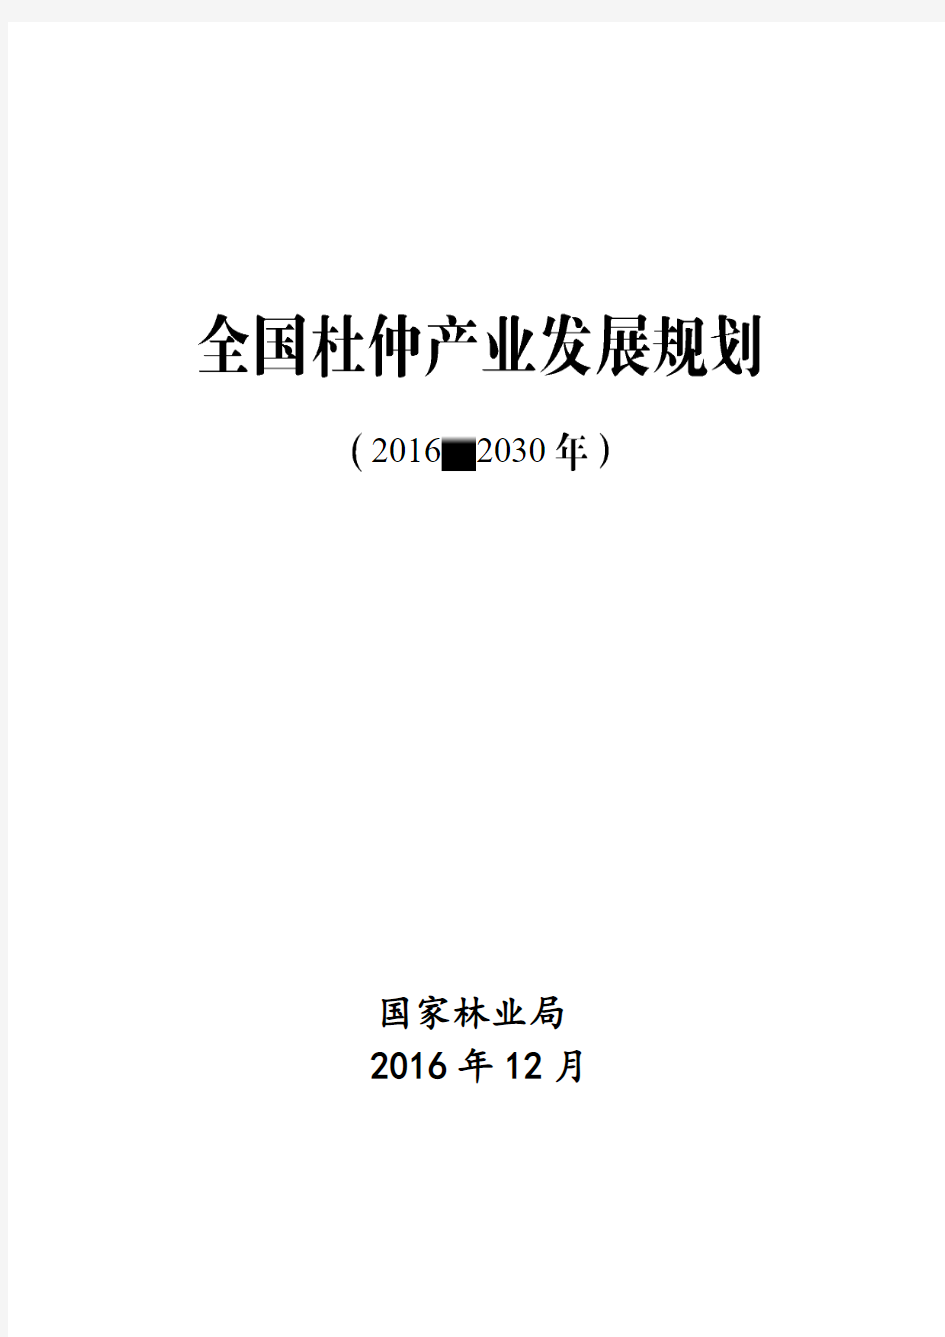 最终印刷版：全国杜仲产业发展规划(2016-2030年)20170912